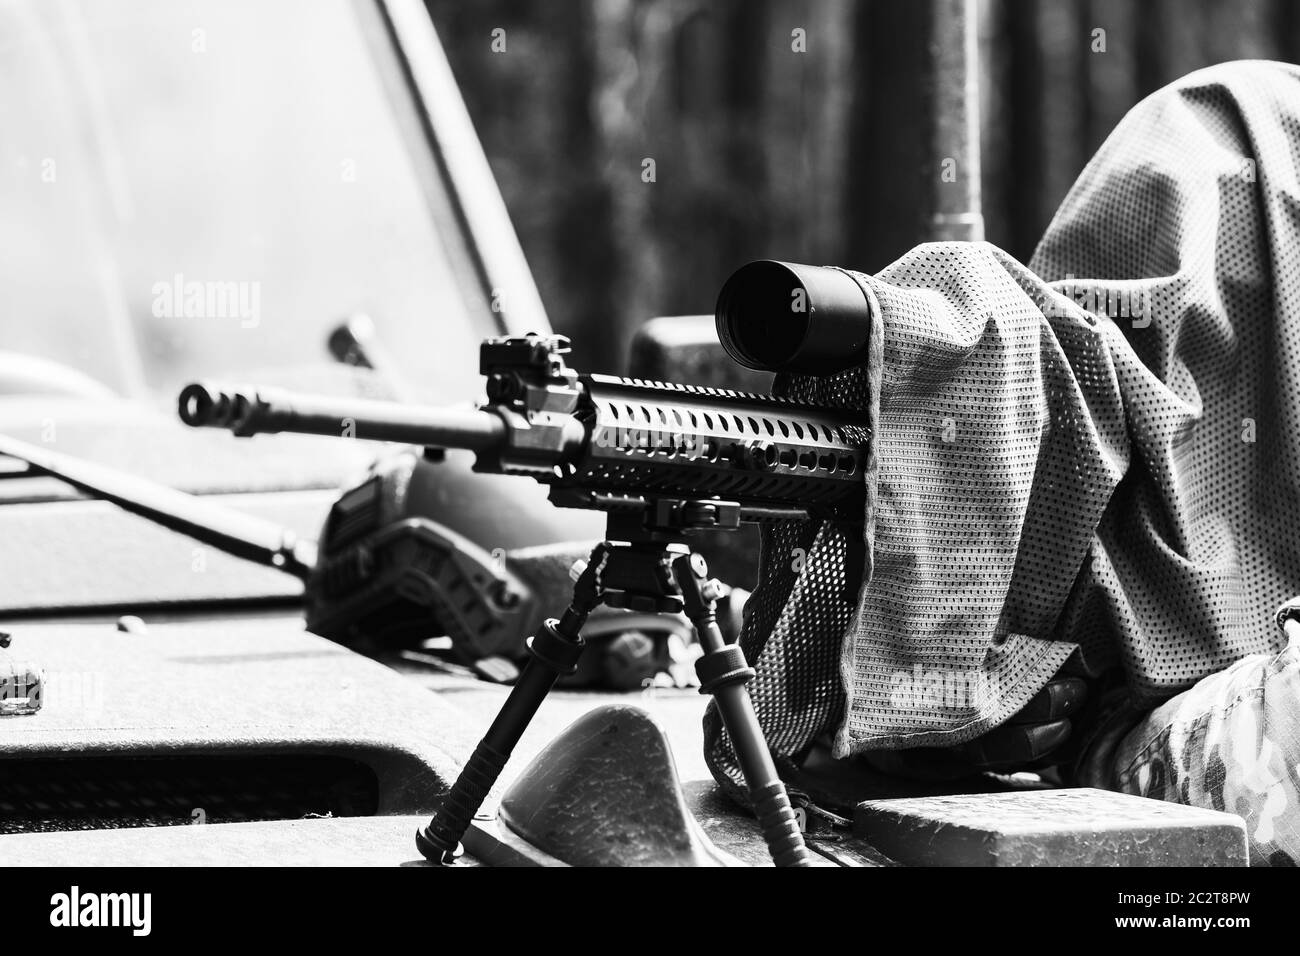 Militaire en uniforme de camouflage avec fusil. Fusil de précision équipé. Un sniper masqué vise une cible. Sniper avec un fusil. Banque D'Images